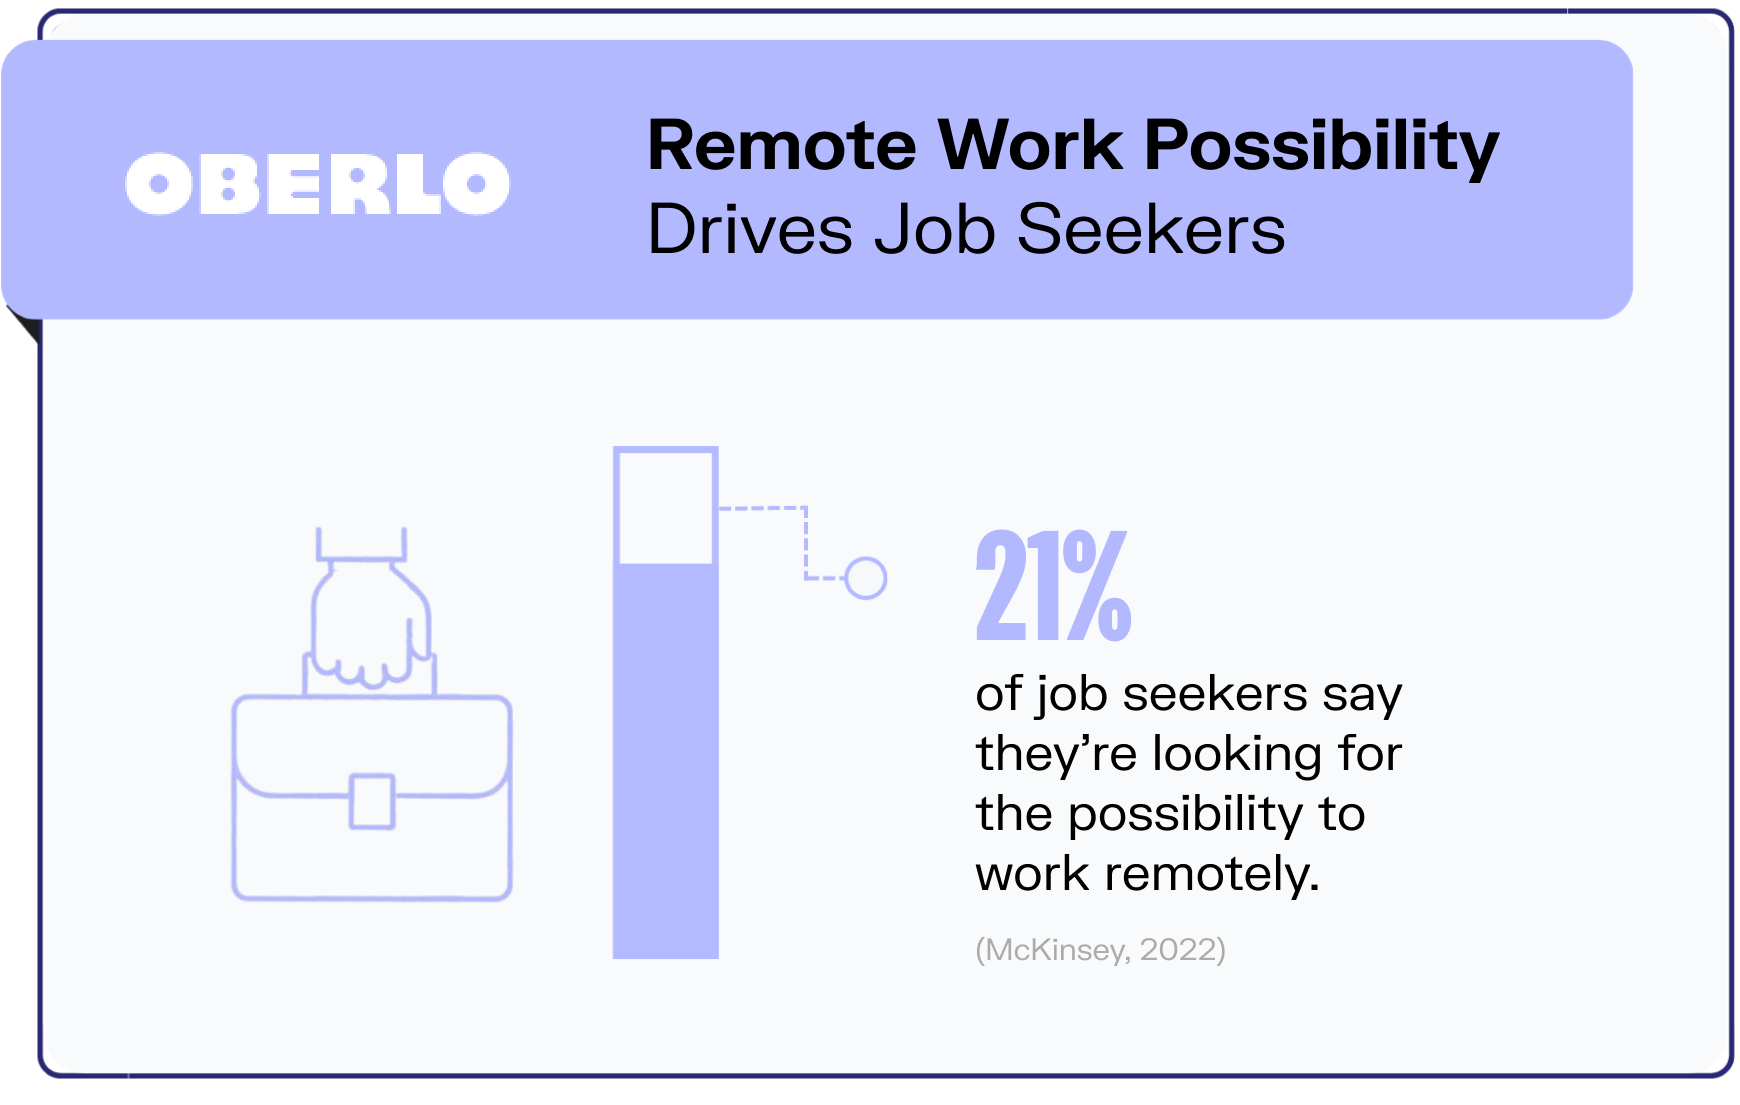 remote work statistics graphic9